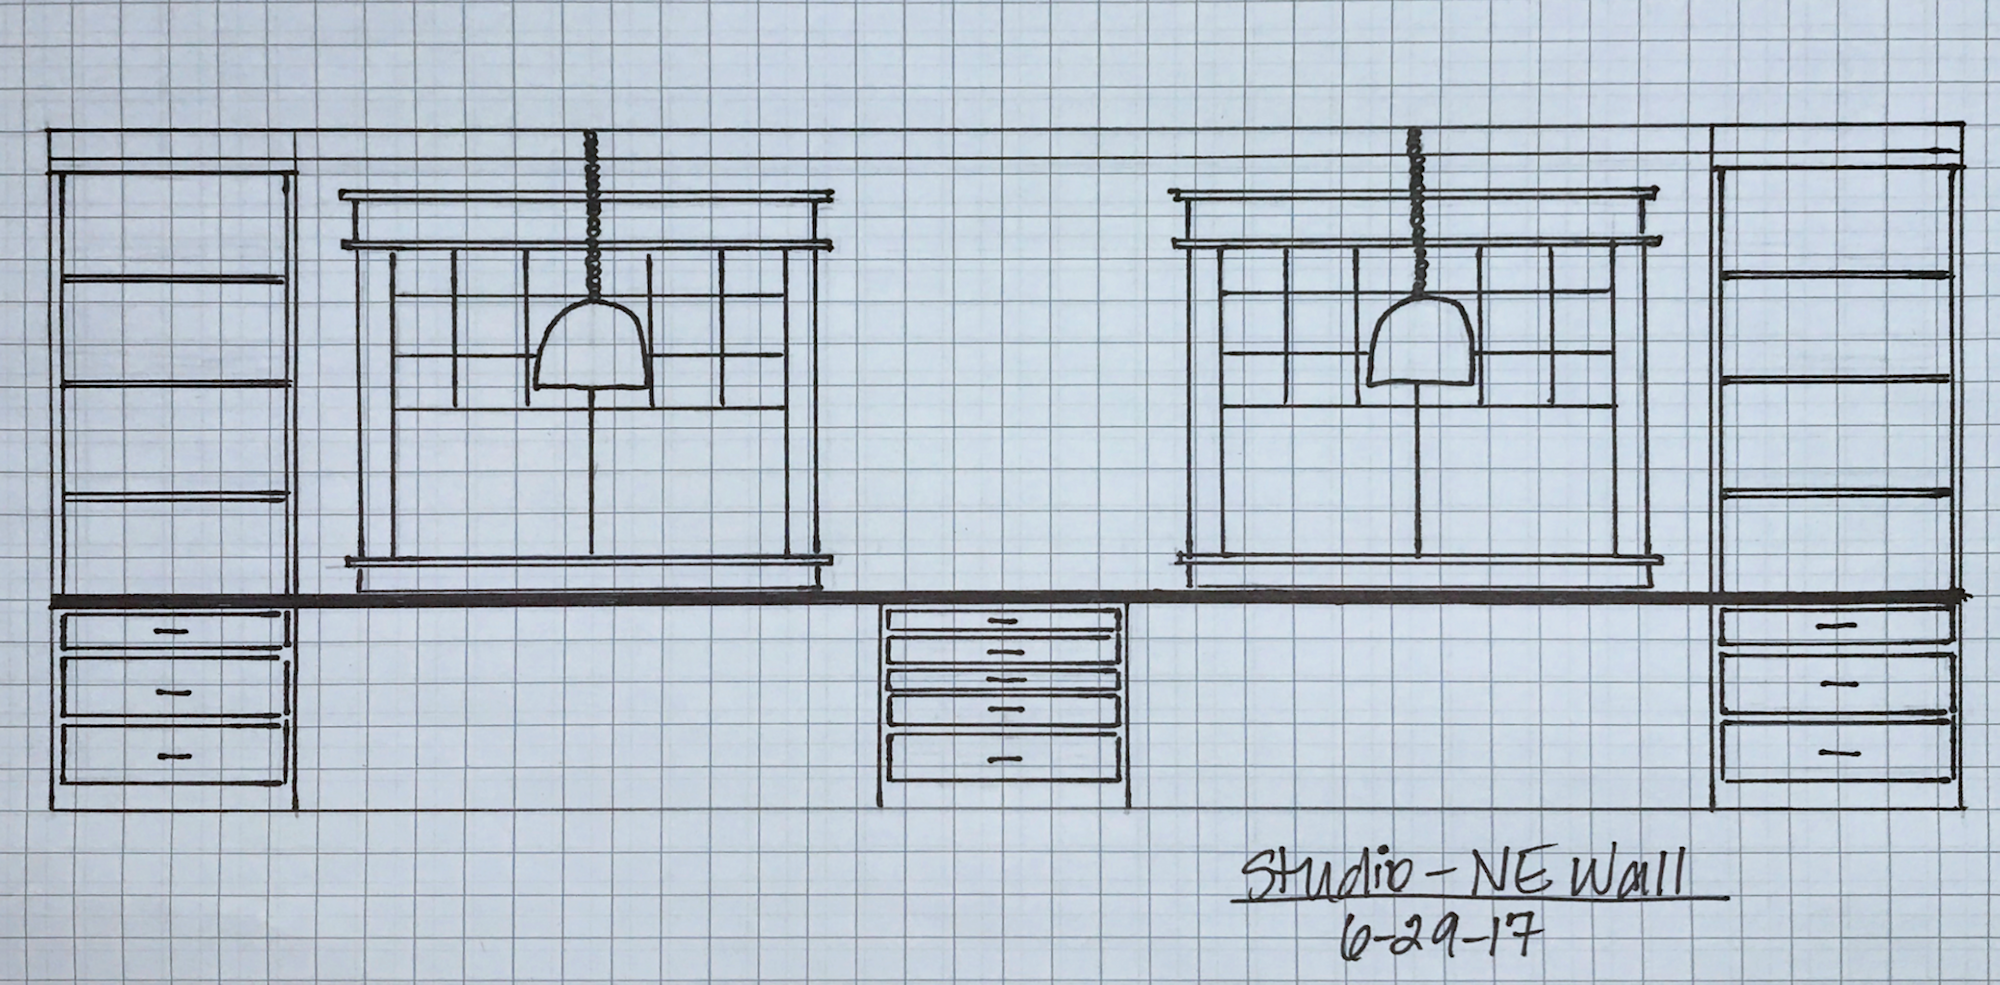 The Finalized Studio Plans (Windows, Doors, Cabinets, Floor Plan, Etc.)